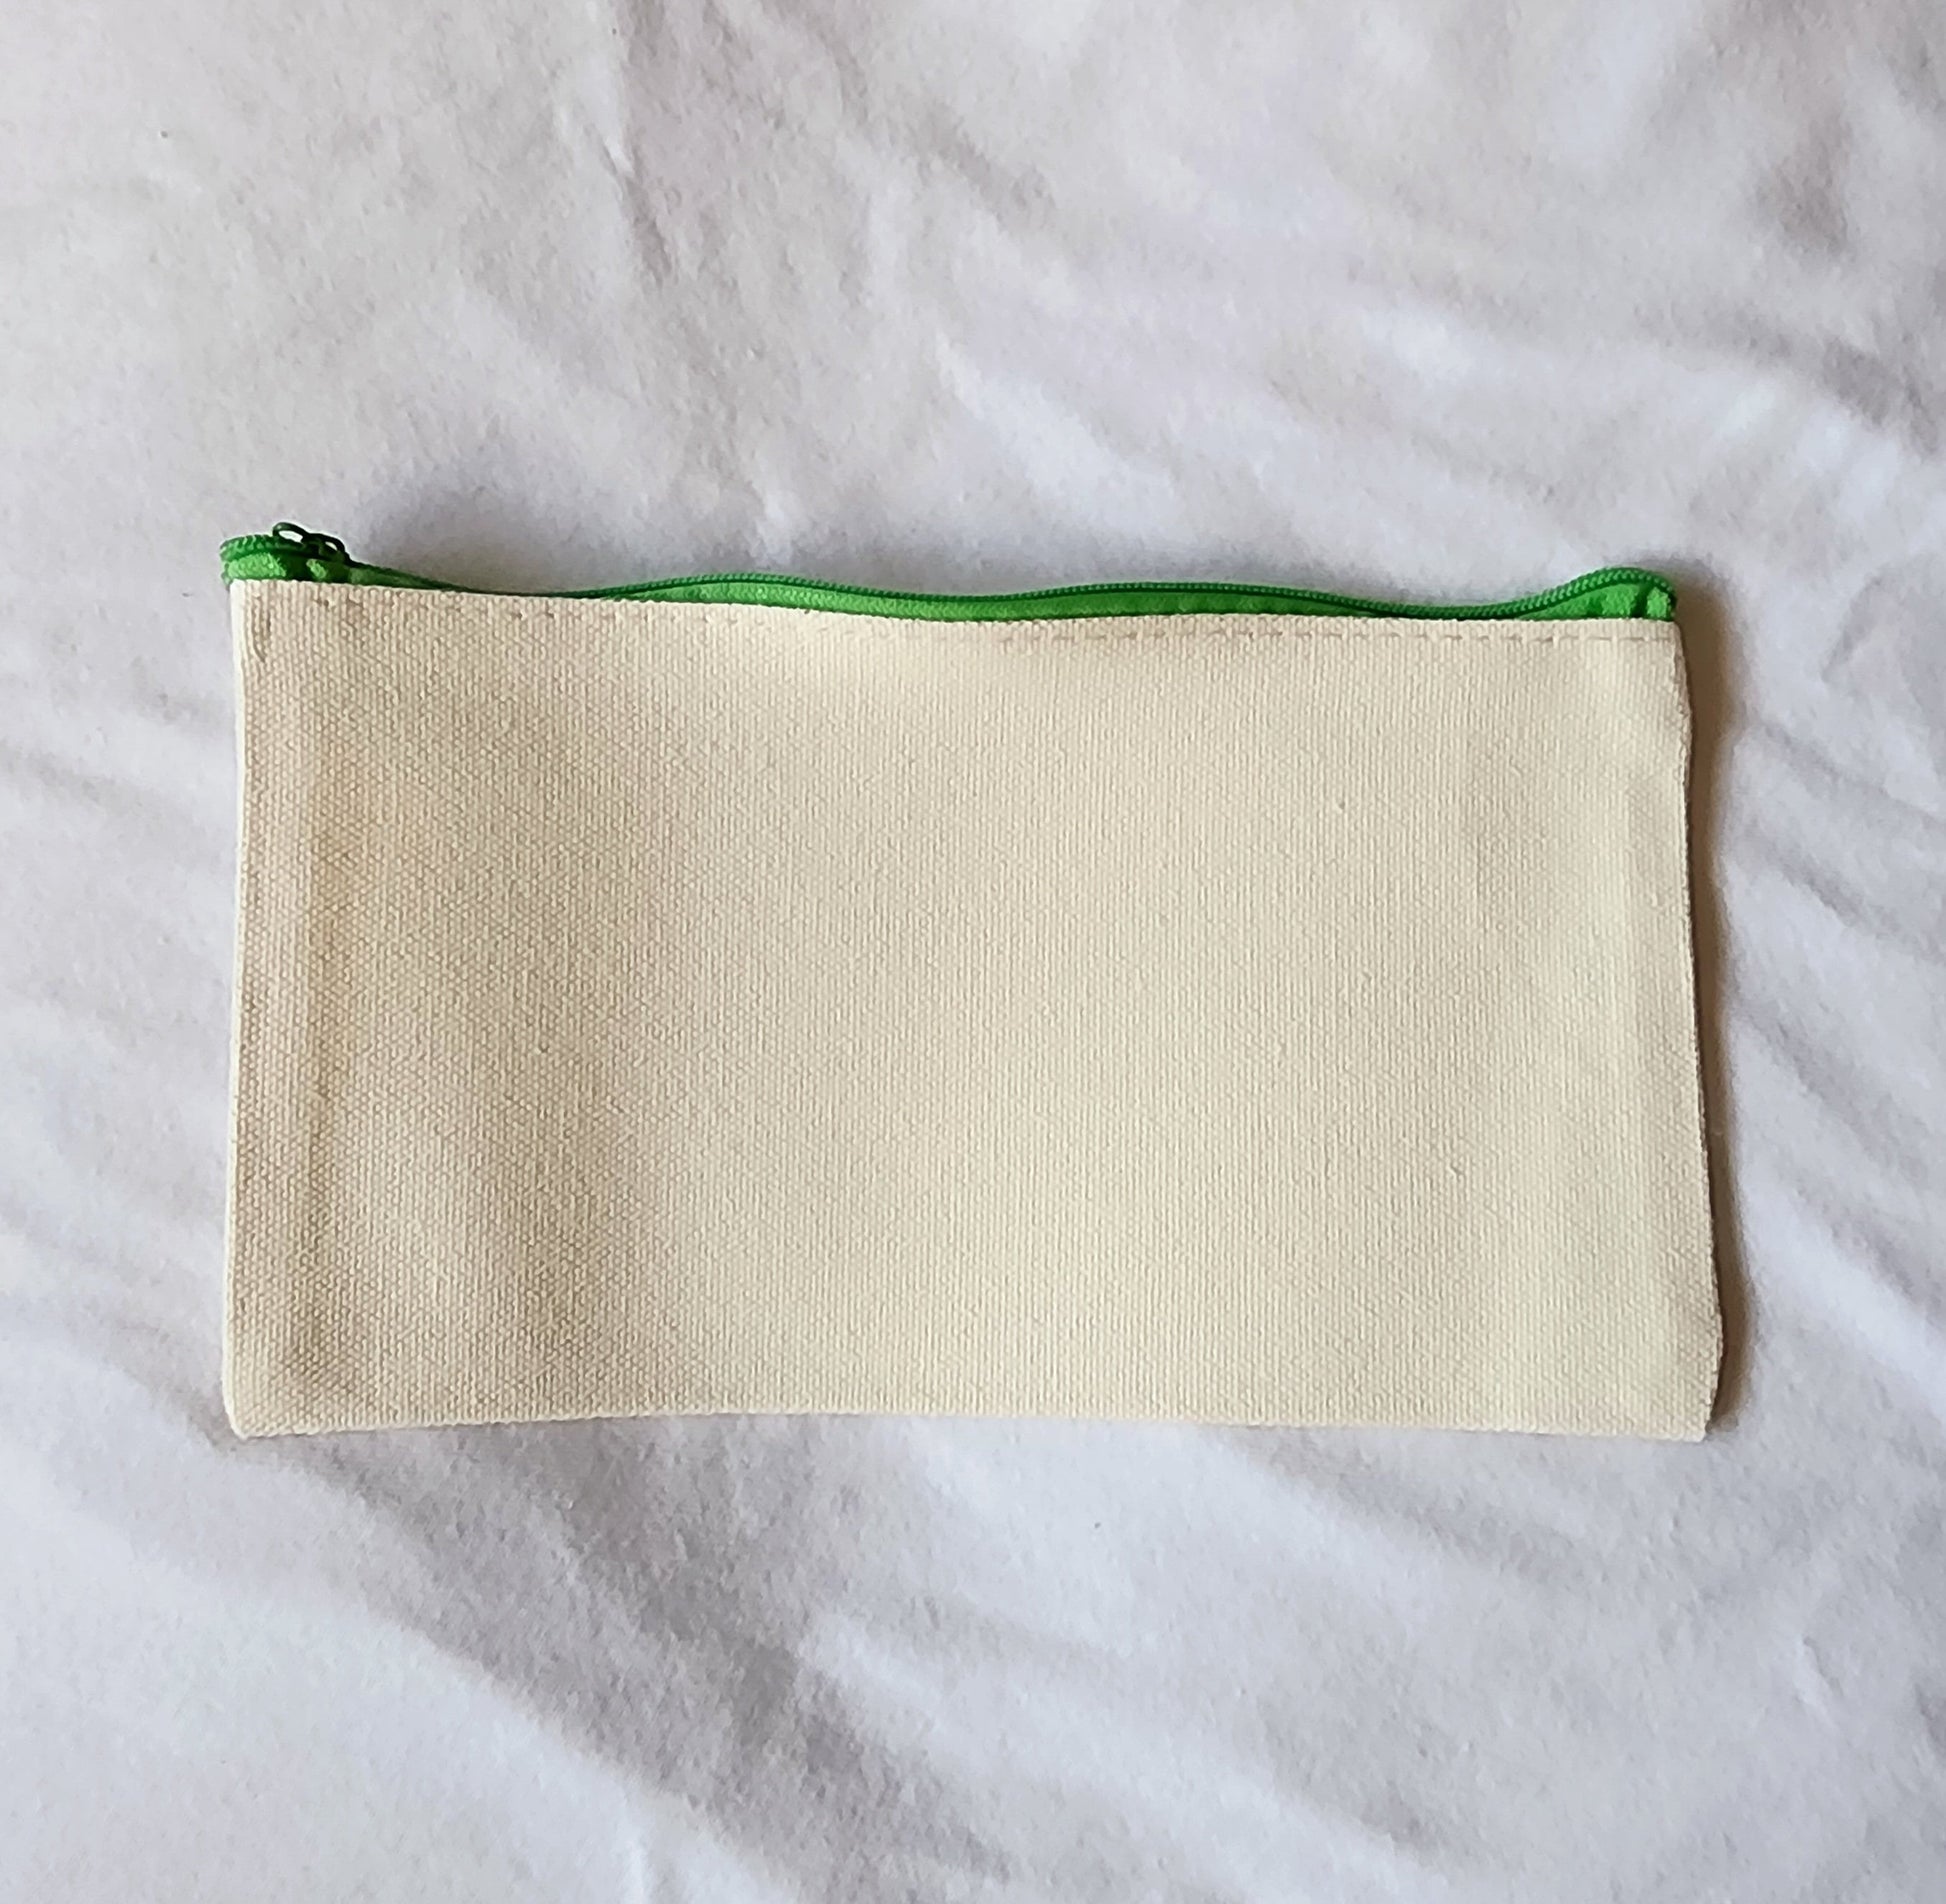 Ireland Customizable Makeup Bag, Toiletry Bag, pencil bag, small zip bag